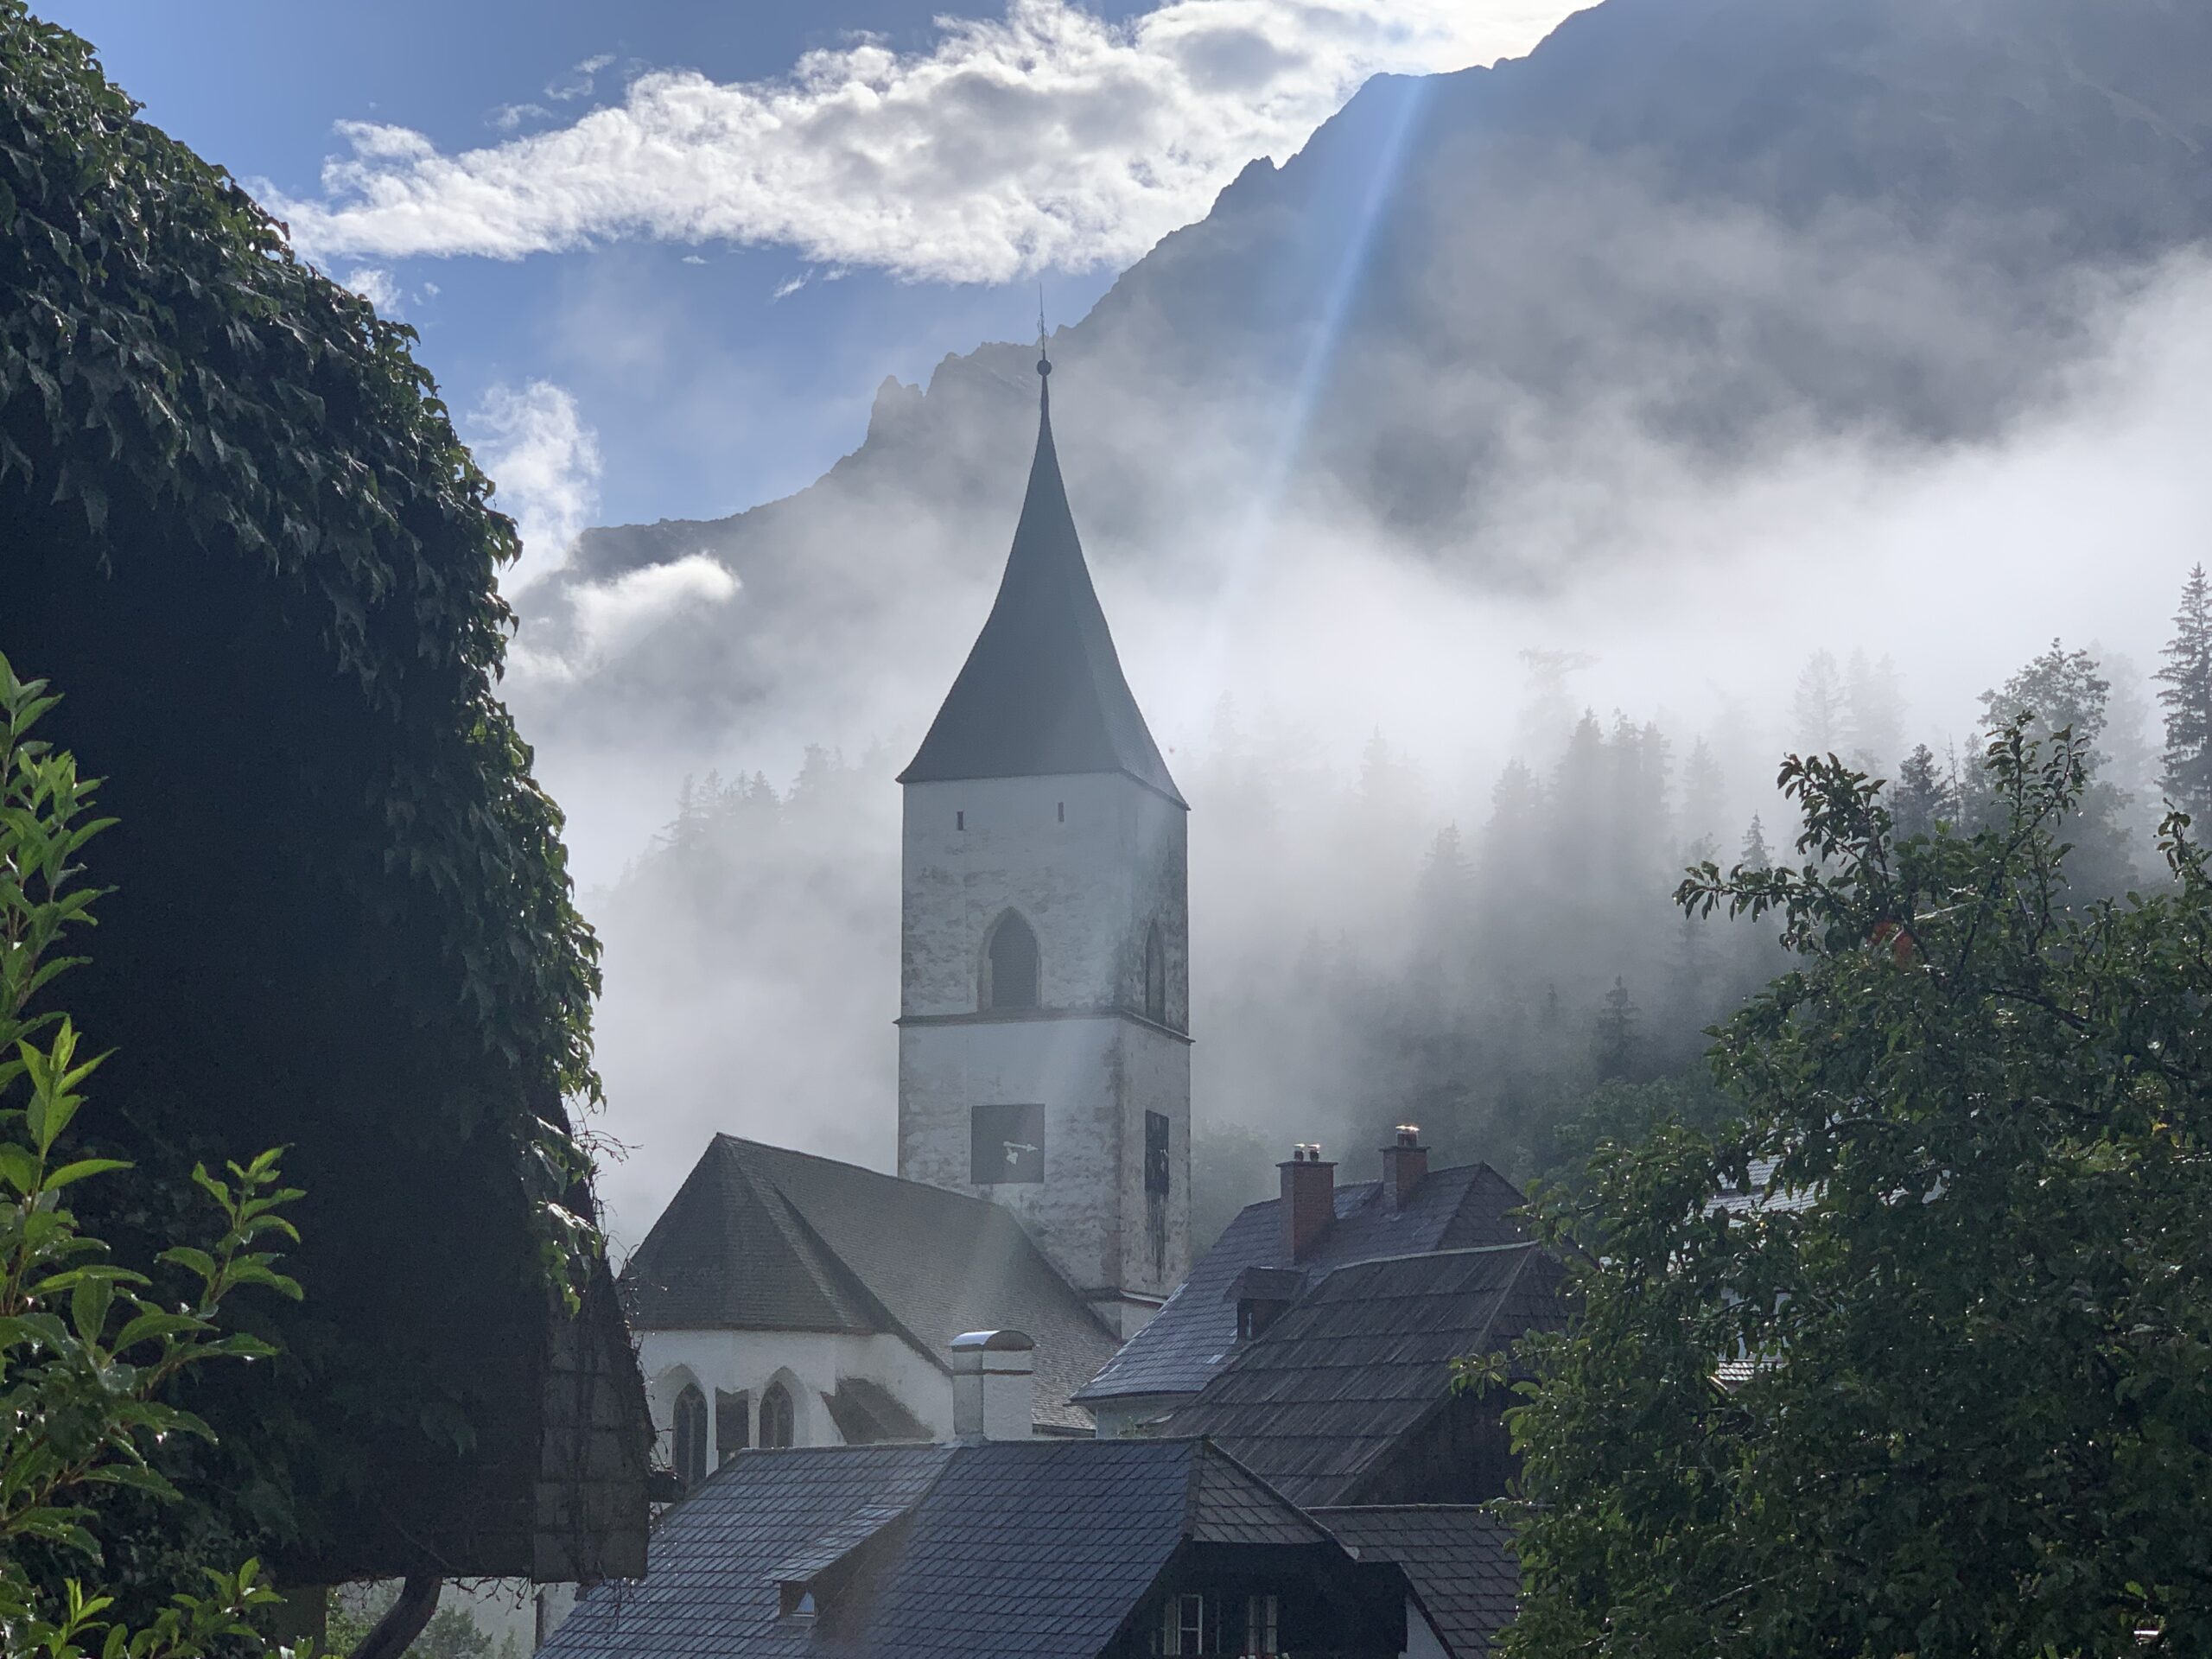 Prachtige zelfgemaakte foto van het kerkje van Pürgg in Oostenrijk.